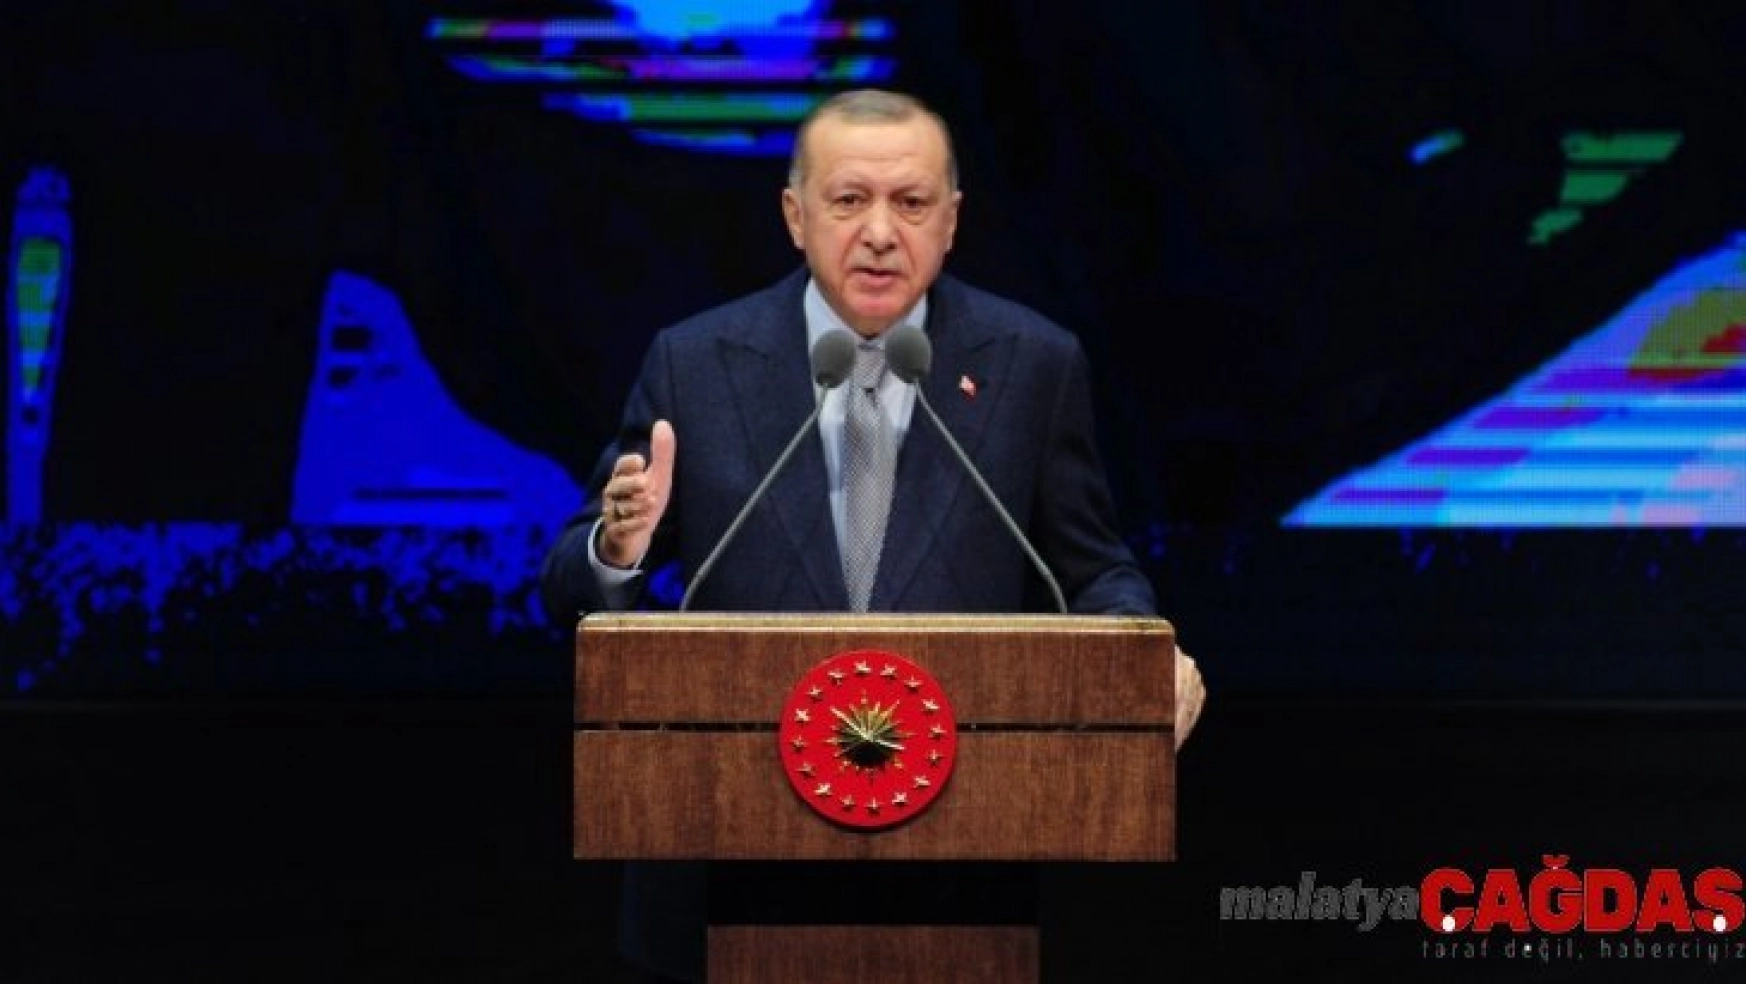 Cumhurbaşkanı Erdoğan 2019 yılı değerlendirme toplantısında konuştu